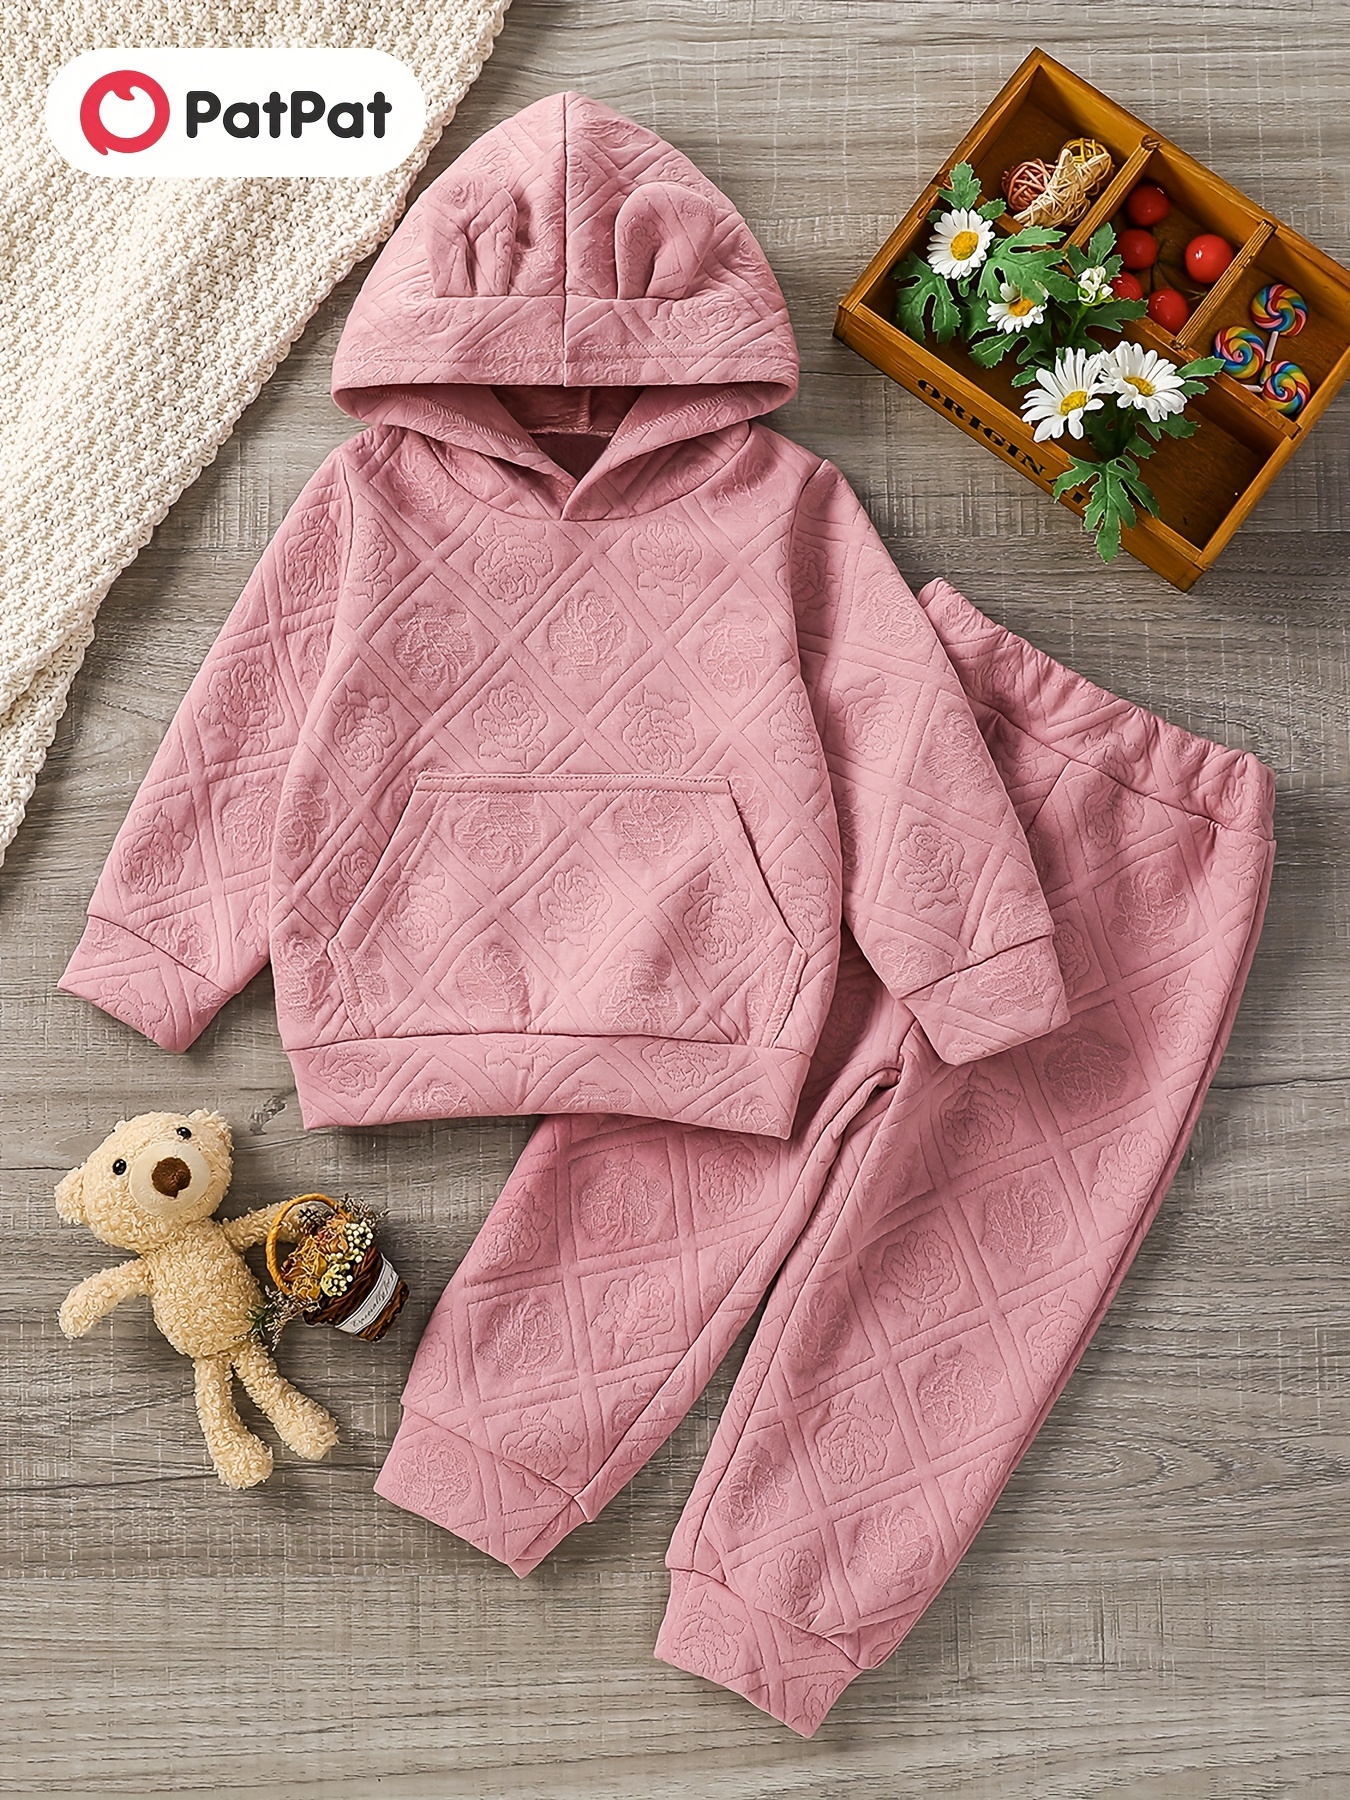 2-piece Toddler Girl Rainbow Print Lace Hem Peplum Long-sleeve Top and Pants Set